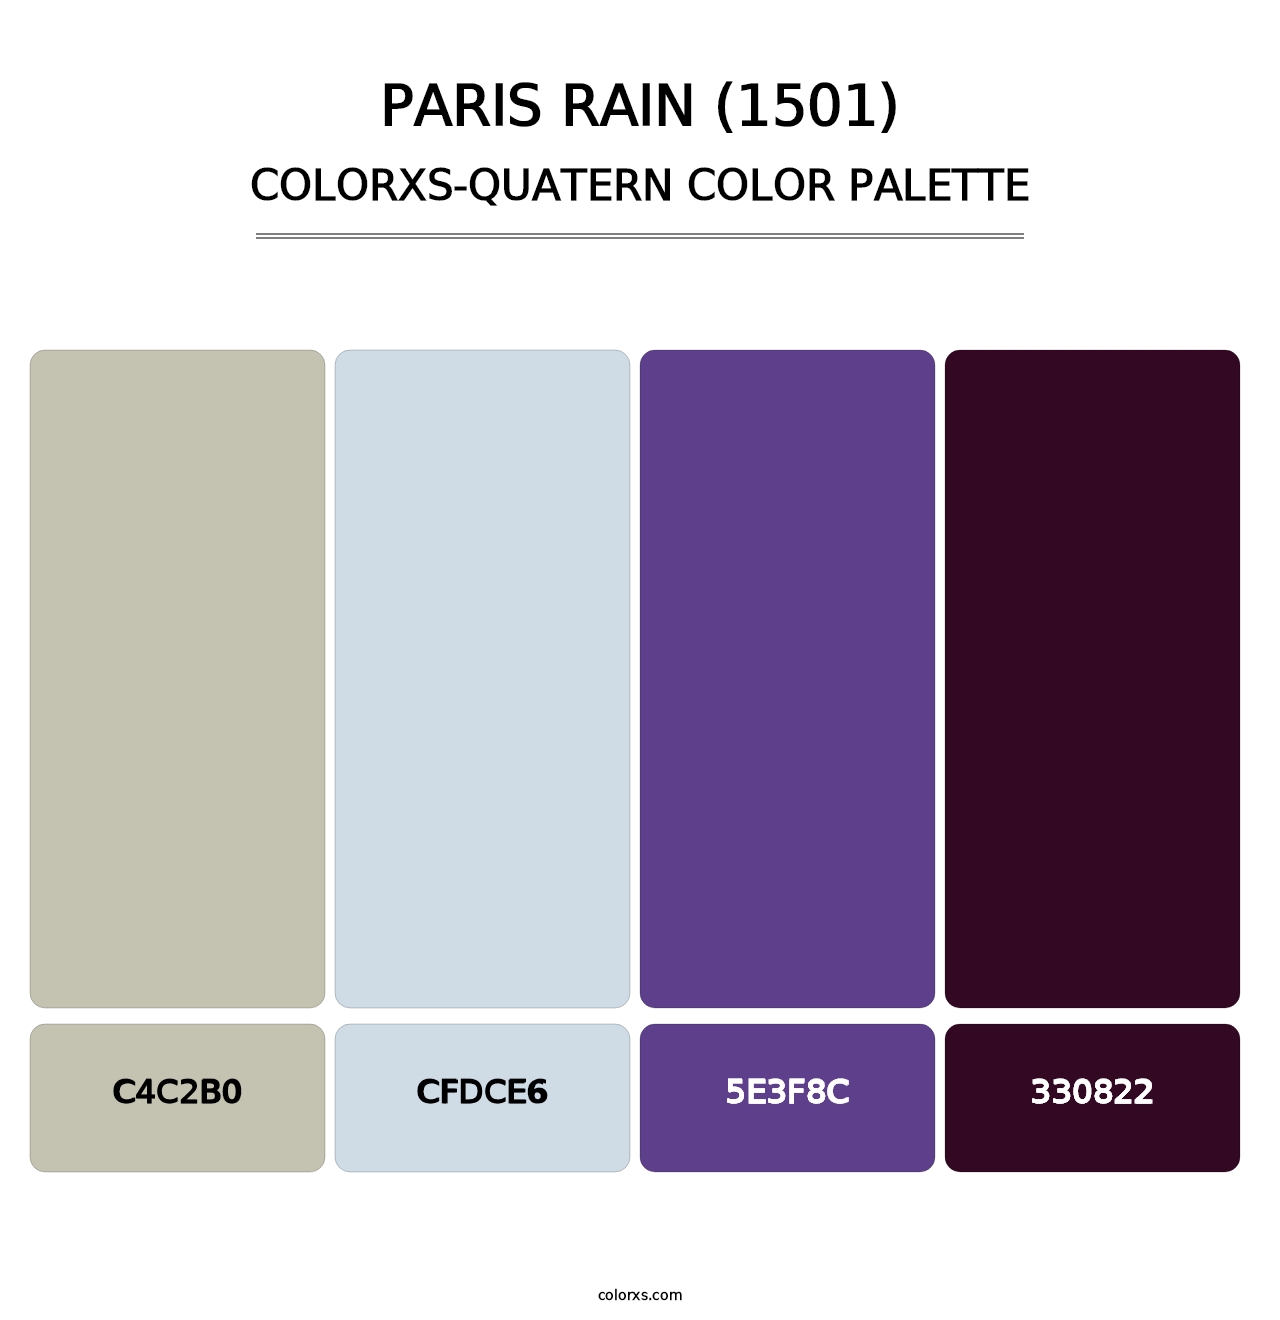 Paris Rain (1501) - Colorxs Quatern Palette